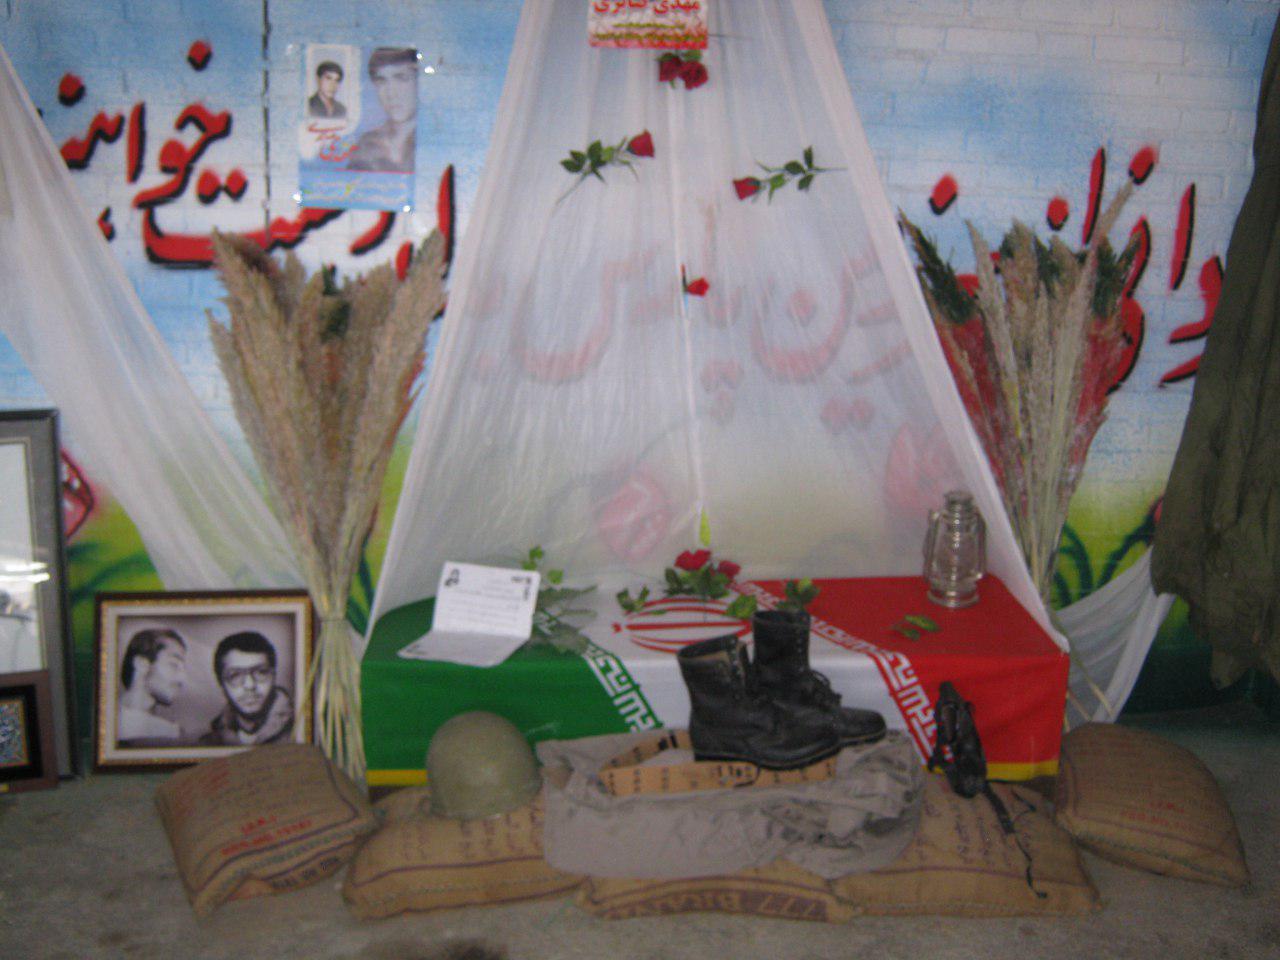 یادواره ی شهدای دفاع مقدس و مدافعان حرم در دبیرستان شاهد فاضل فلاورجان برگزار شد .